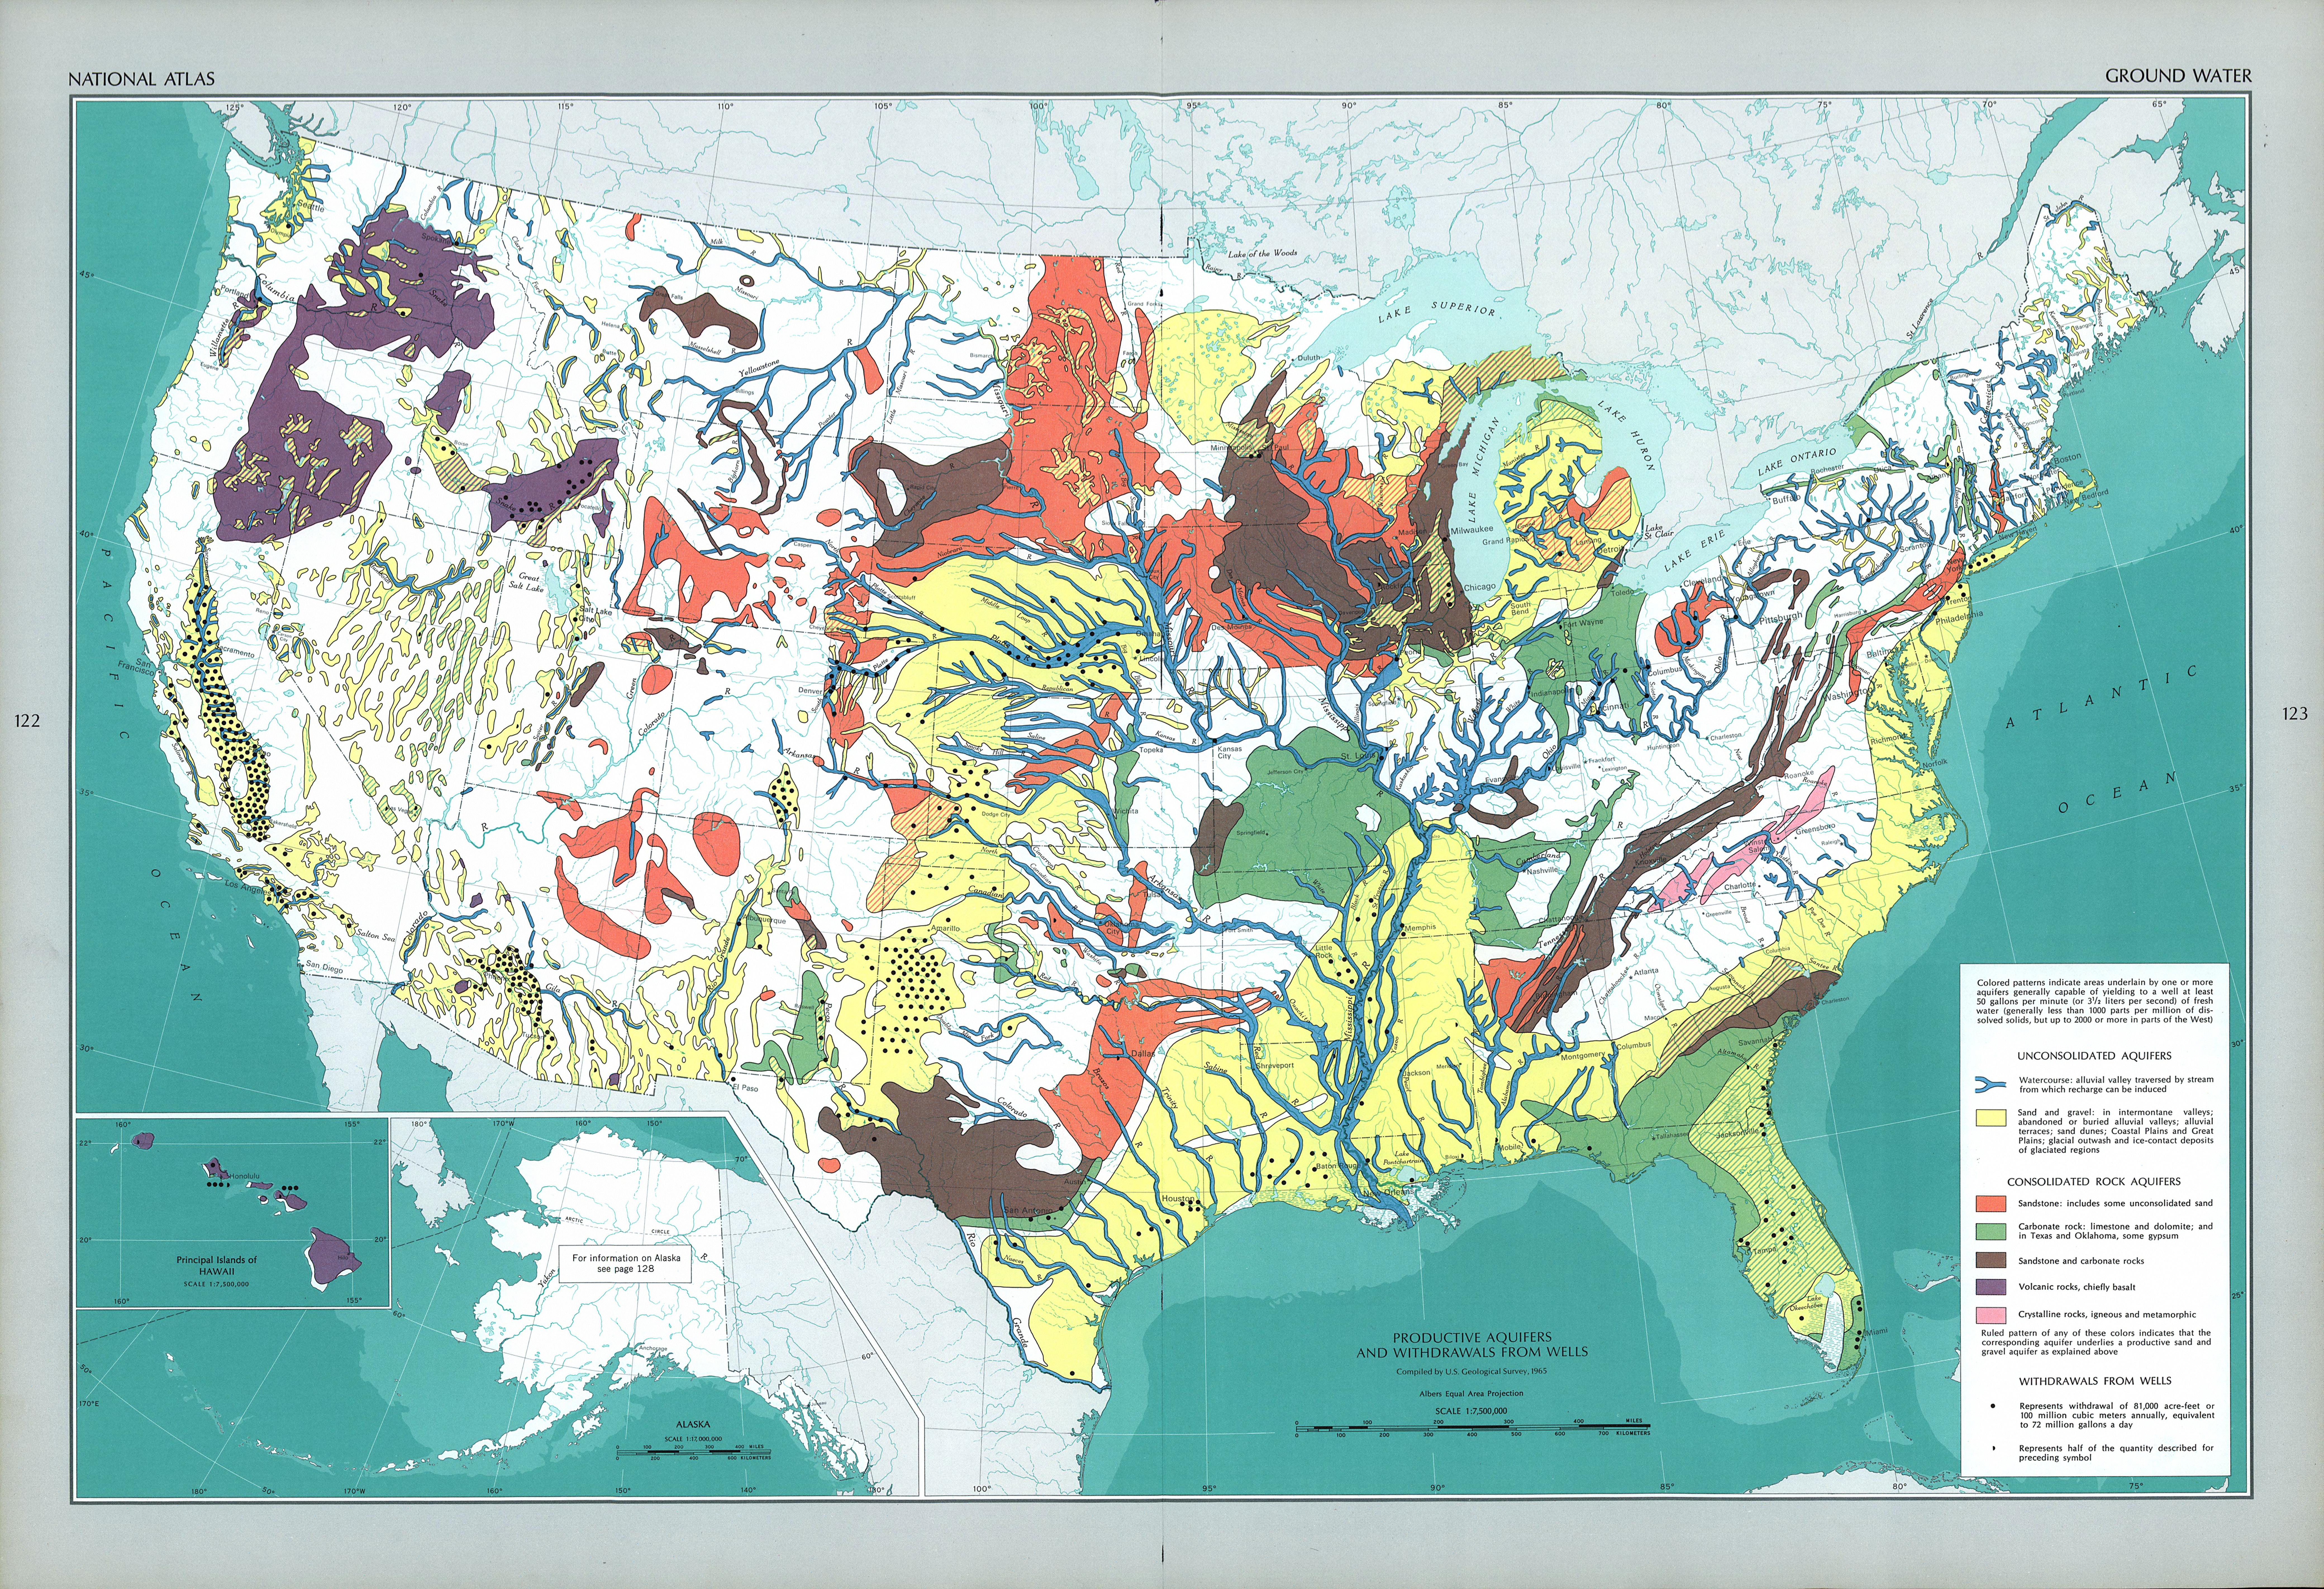 Mapa de las Aguas Subterráneas en Estados Unidos